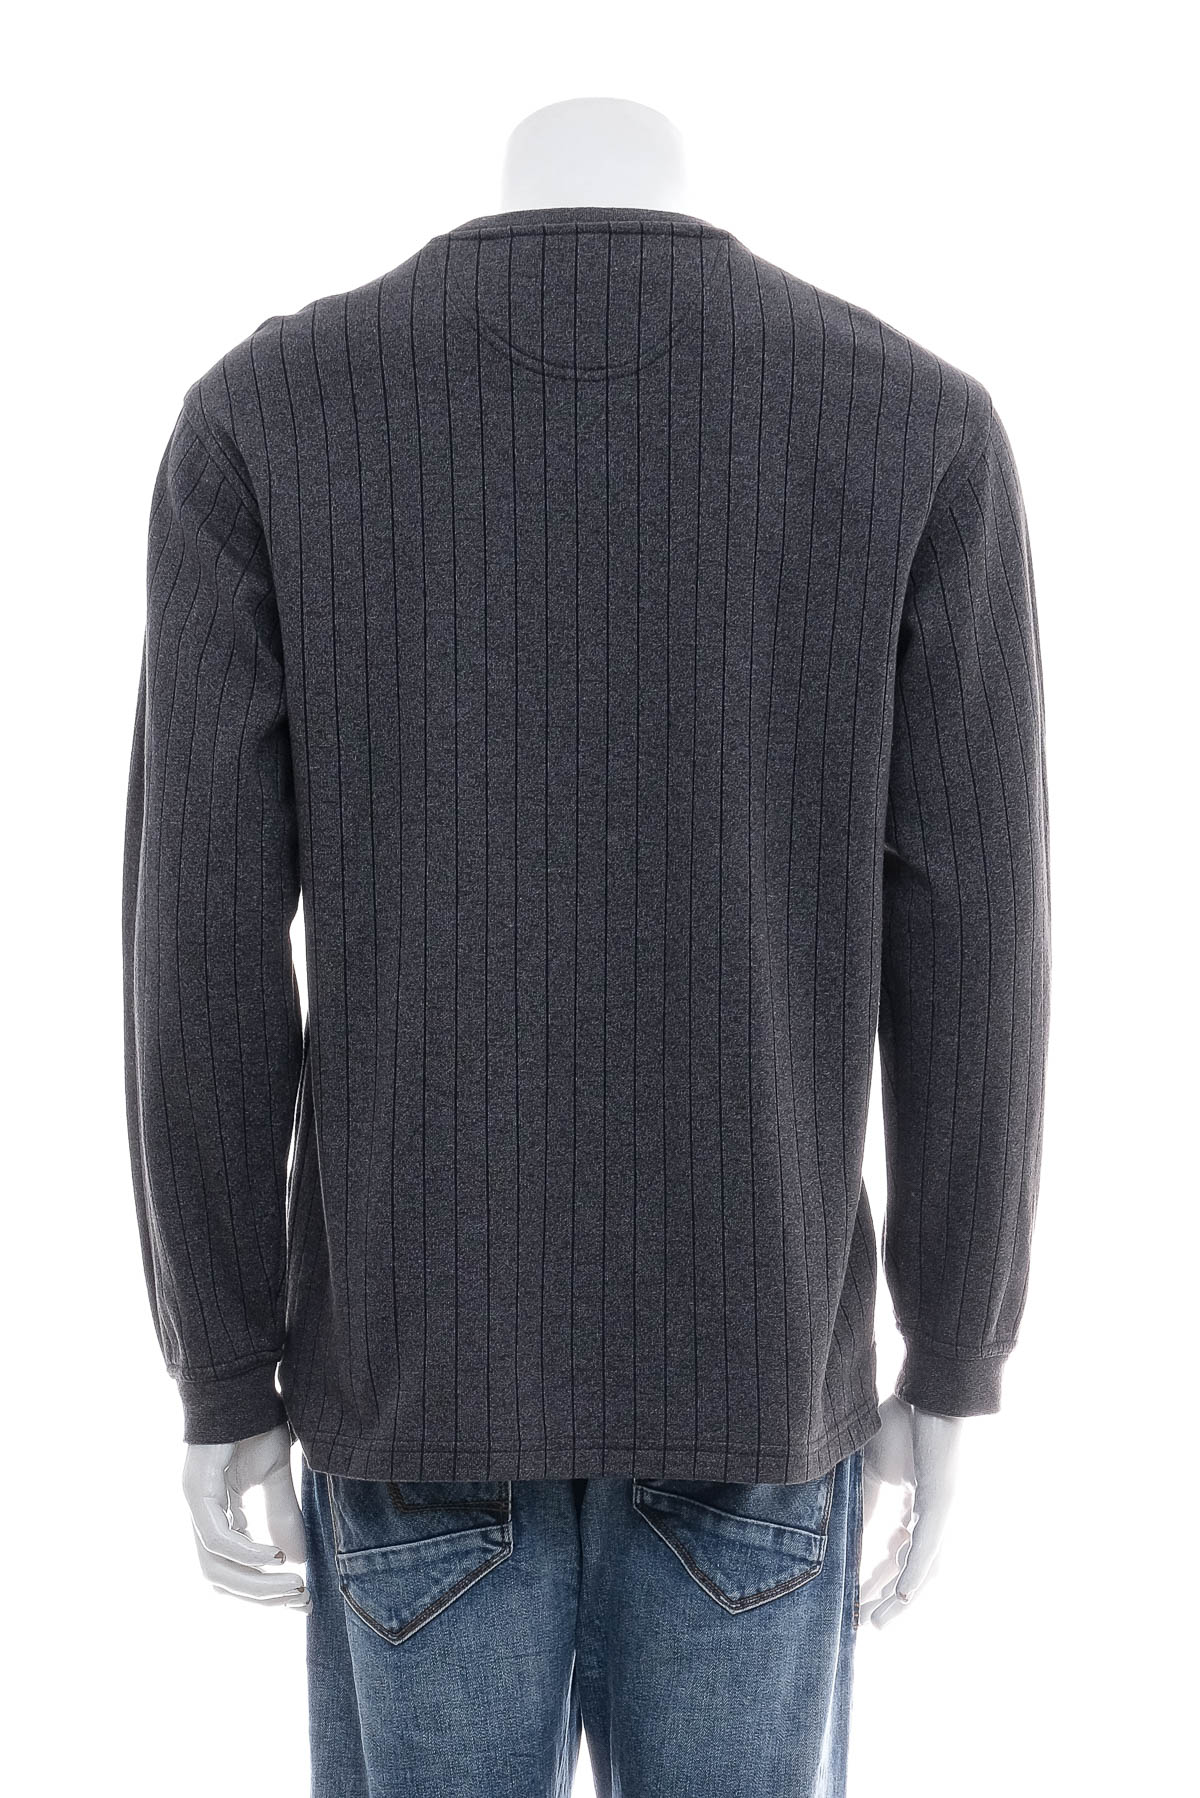 Men's sweater - Van Heusen - 1